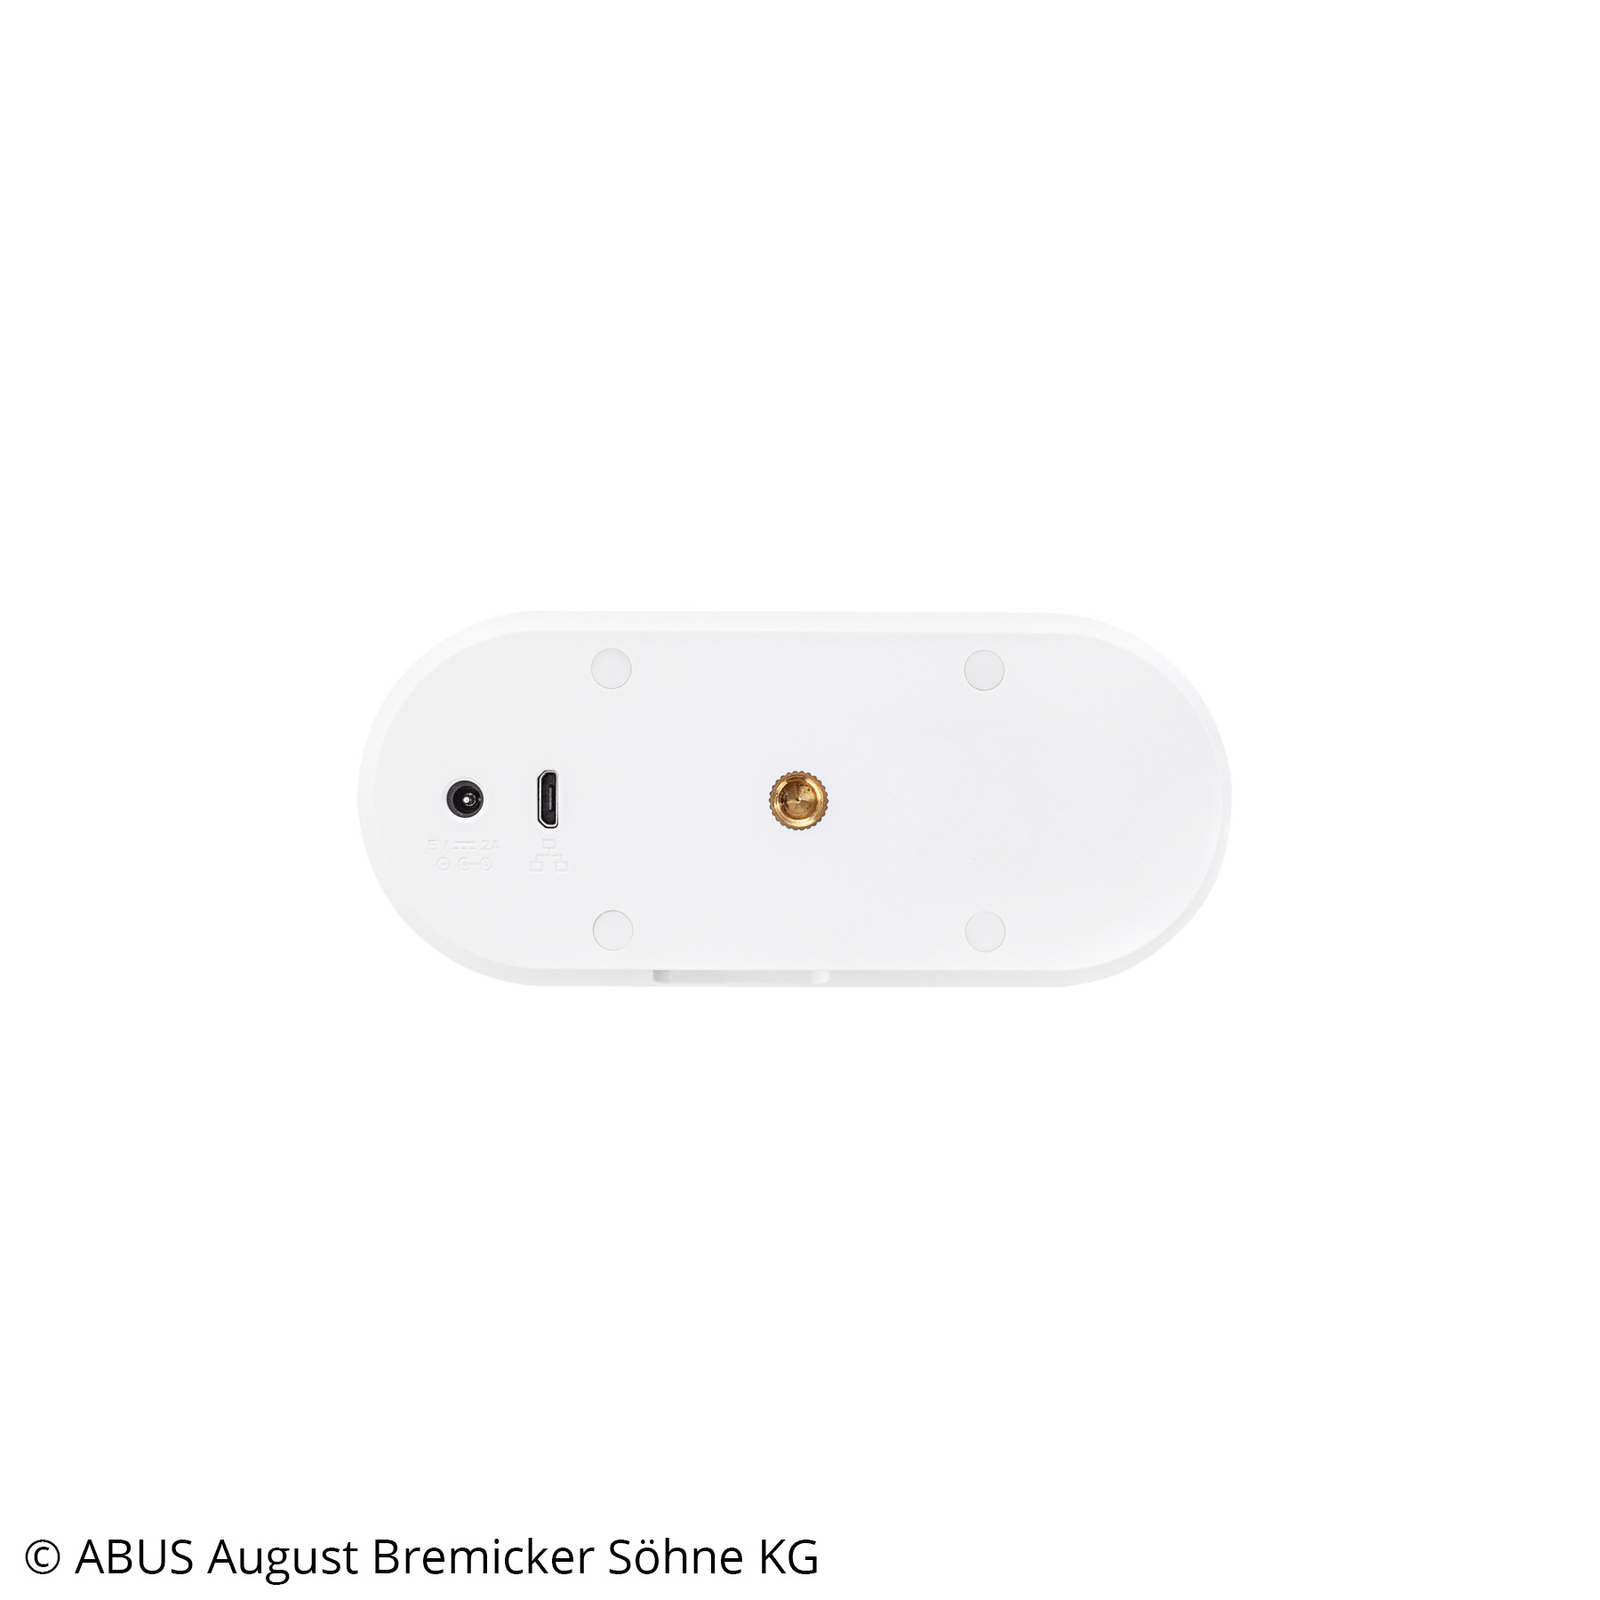 ABUS Privacy Wi-Fi-kamera, full HD, 2-vägs ljud